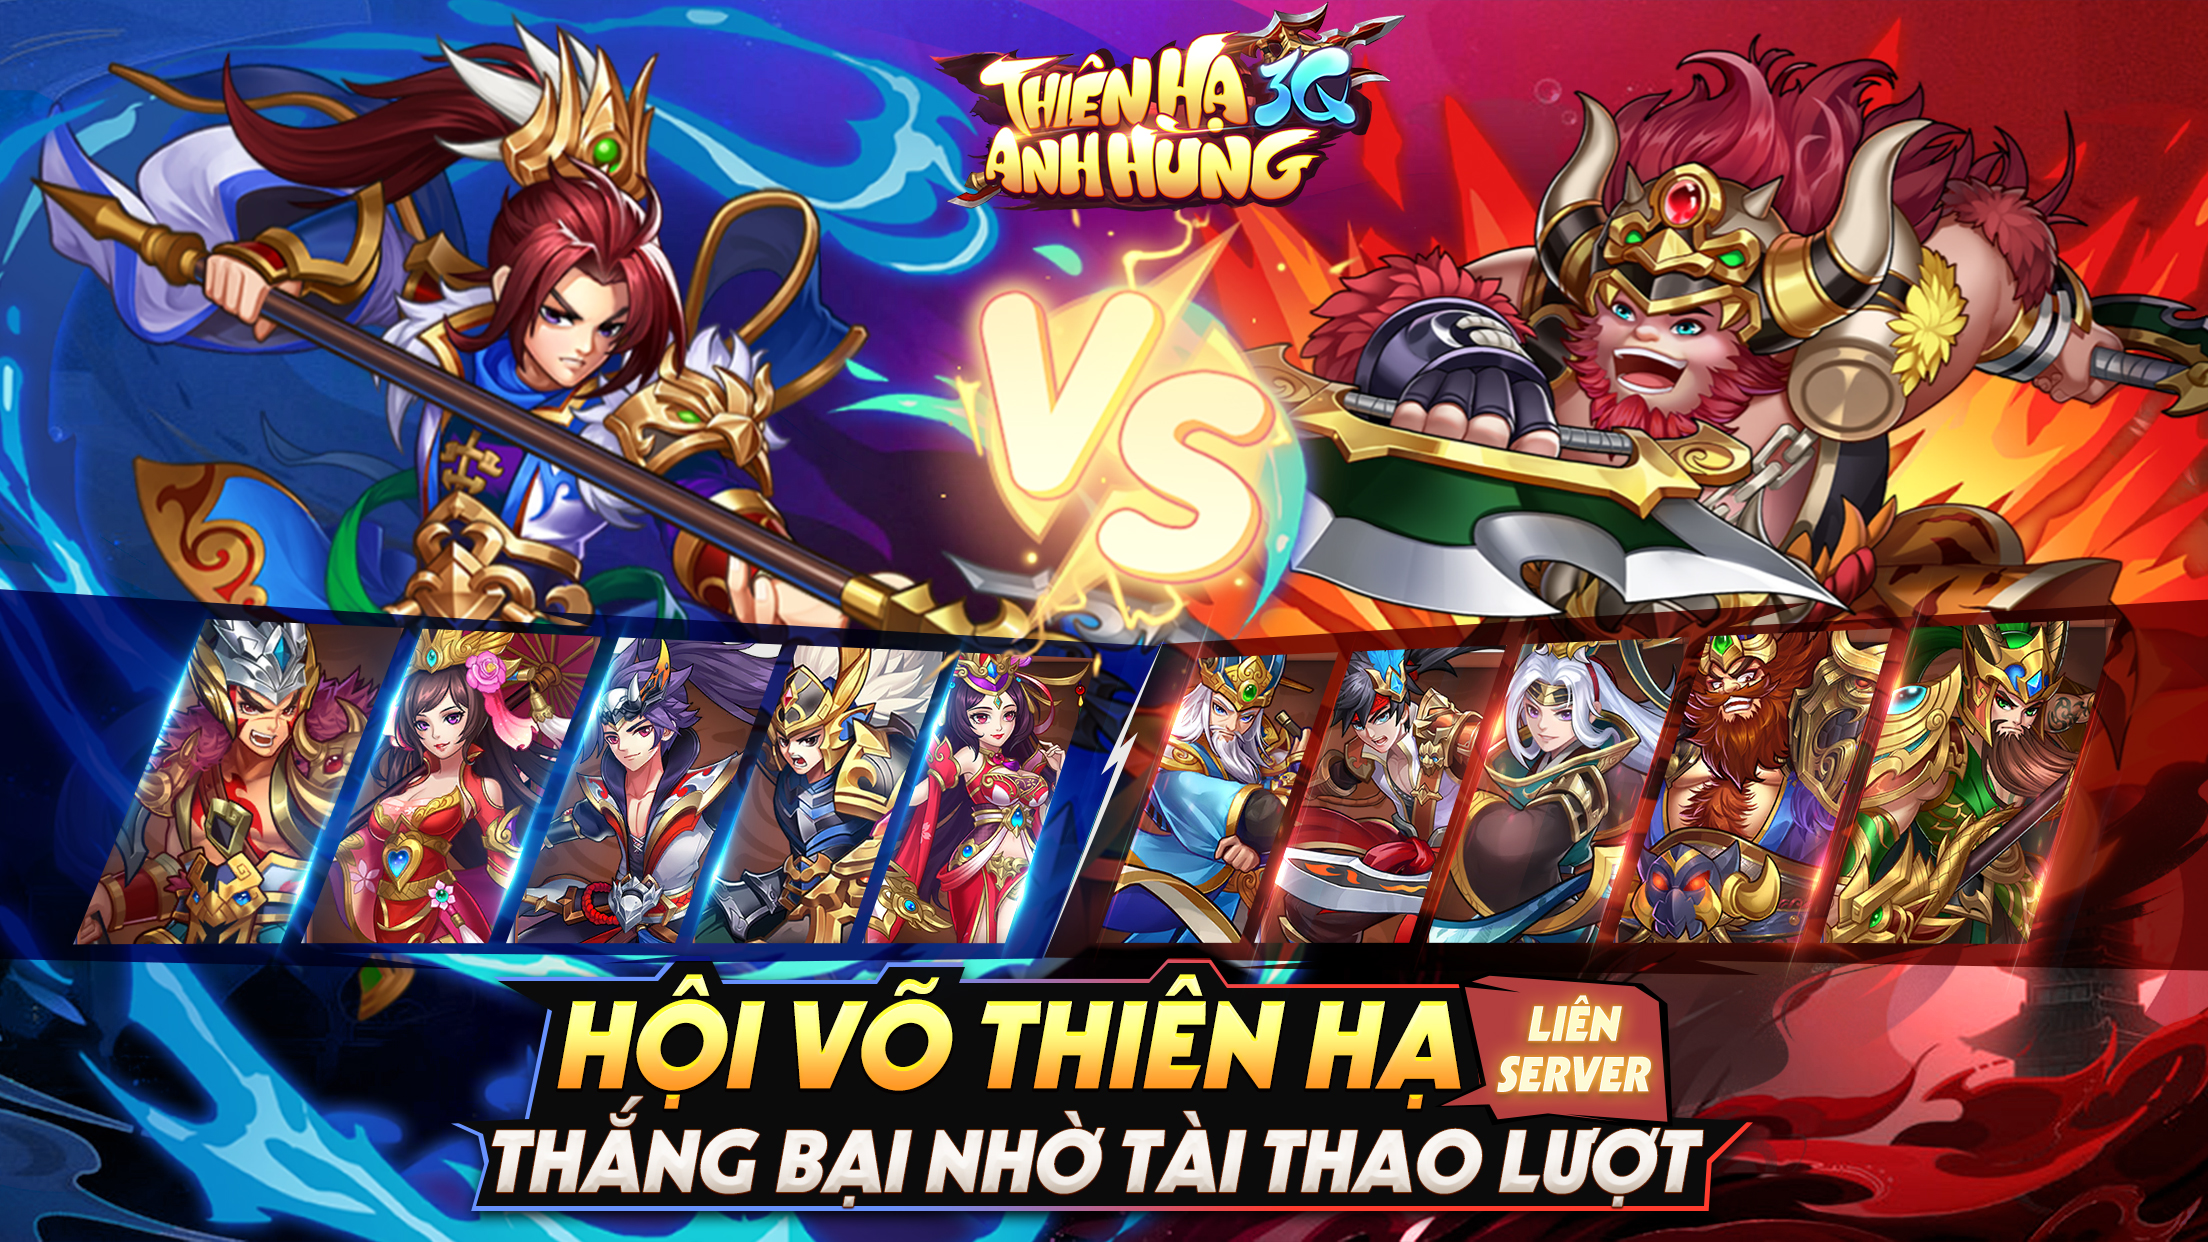 Thiên Hạ Anh Hùng 3Q – Tựa game đấu tướng chiến thuật Tam Quốc “make in Việt Nam” hấp dẫn sắp ra mắt vào đầu tháng 11 2